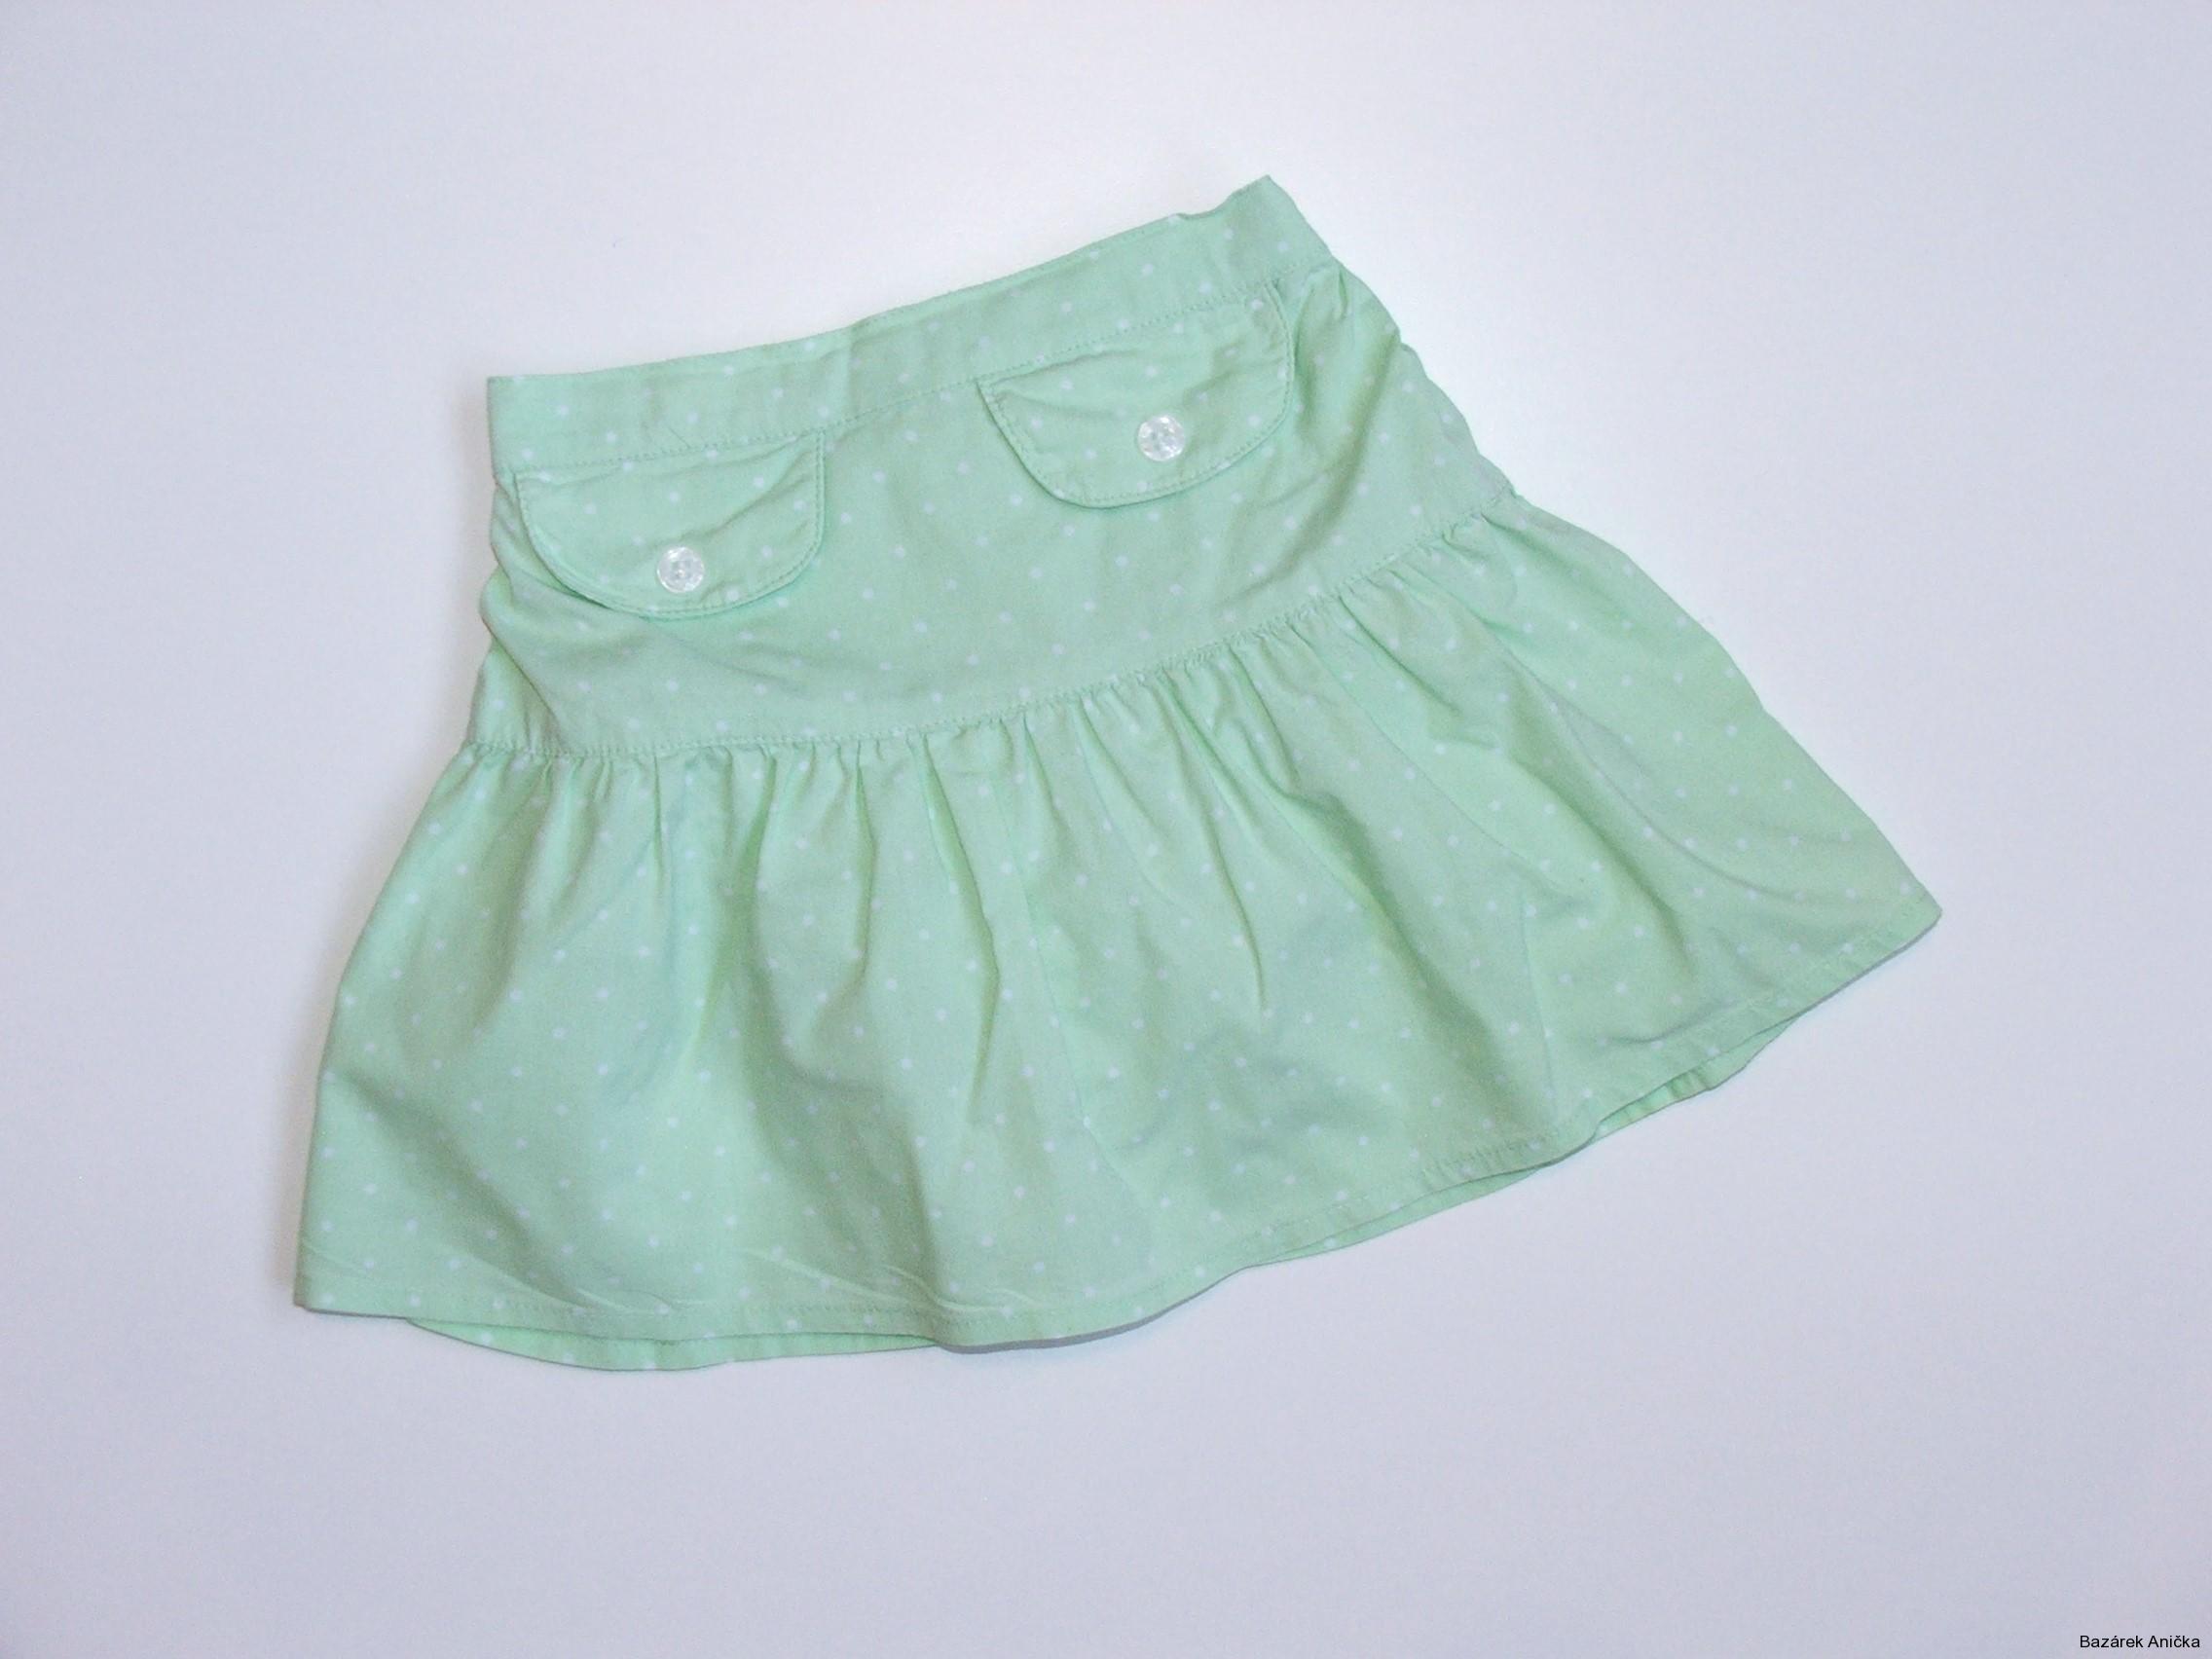 Zelenkavá sukně s všitými kalhotkami vel. 74, Tiny Ted